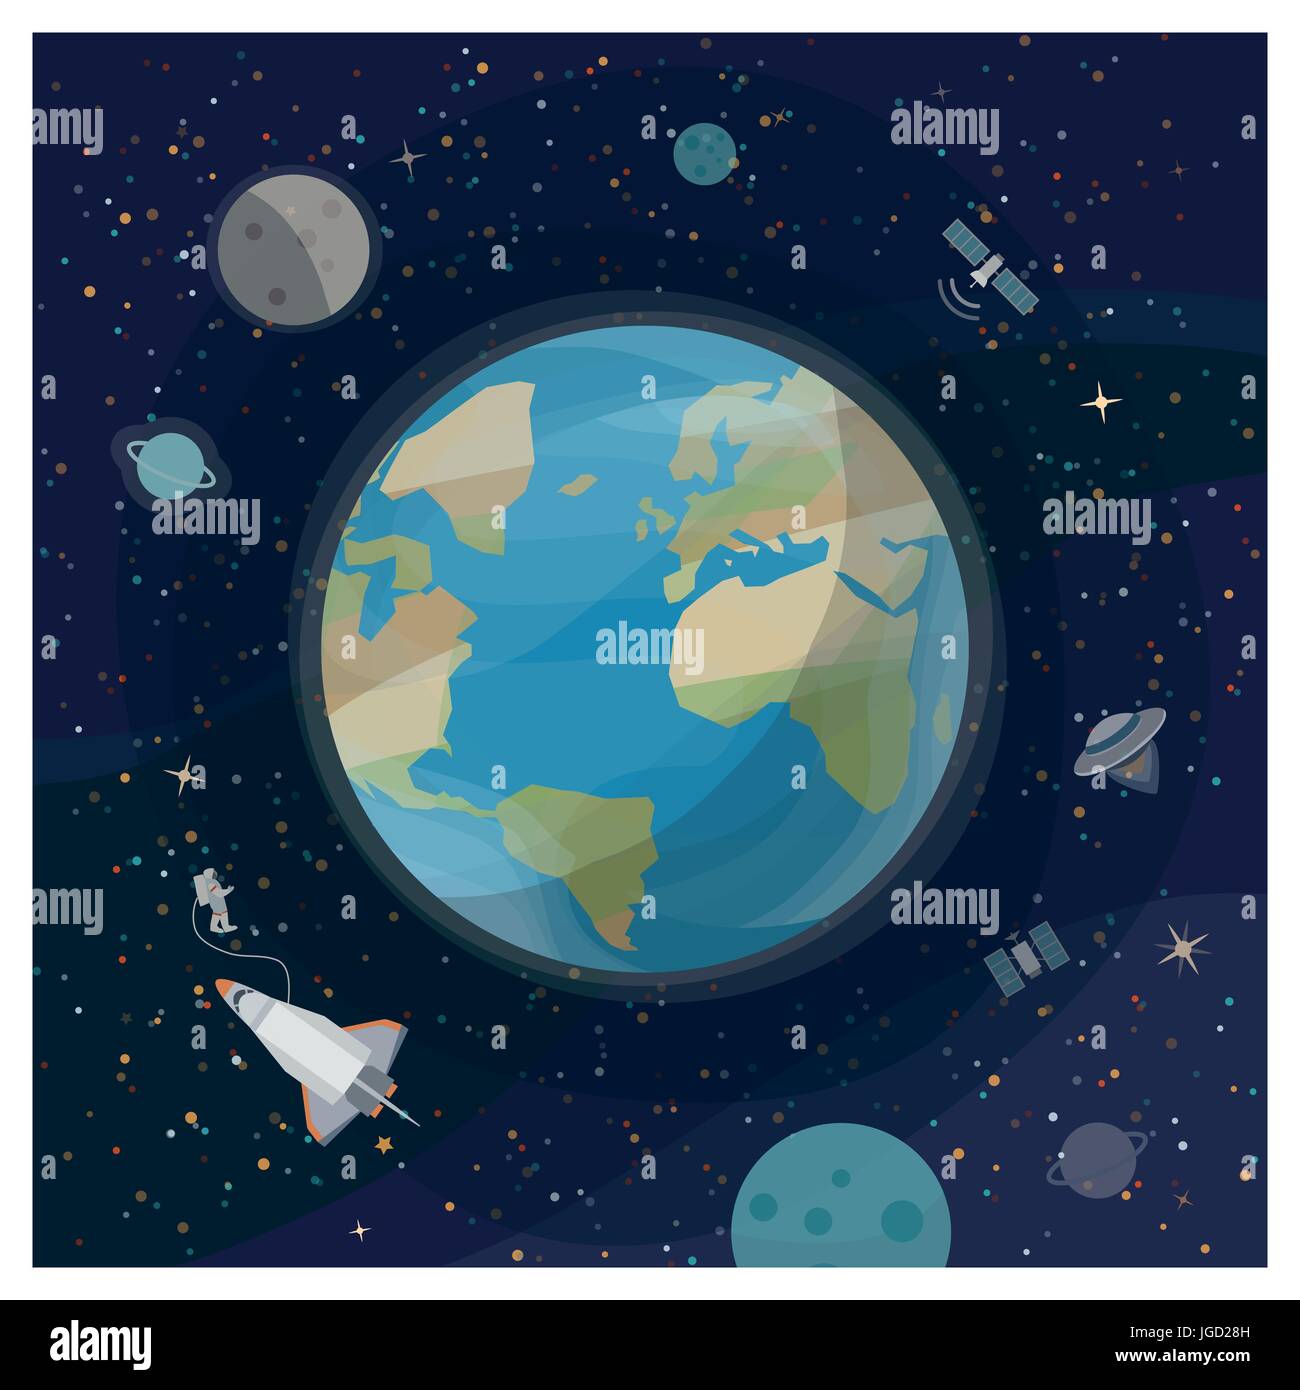 Vue de la terre vue de l'espace avec les satellites, astronaute, vaisseaux spatiaux et les galaxies Illustration de Vecteur